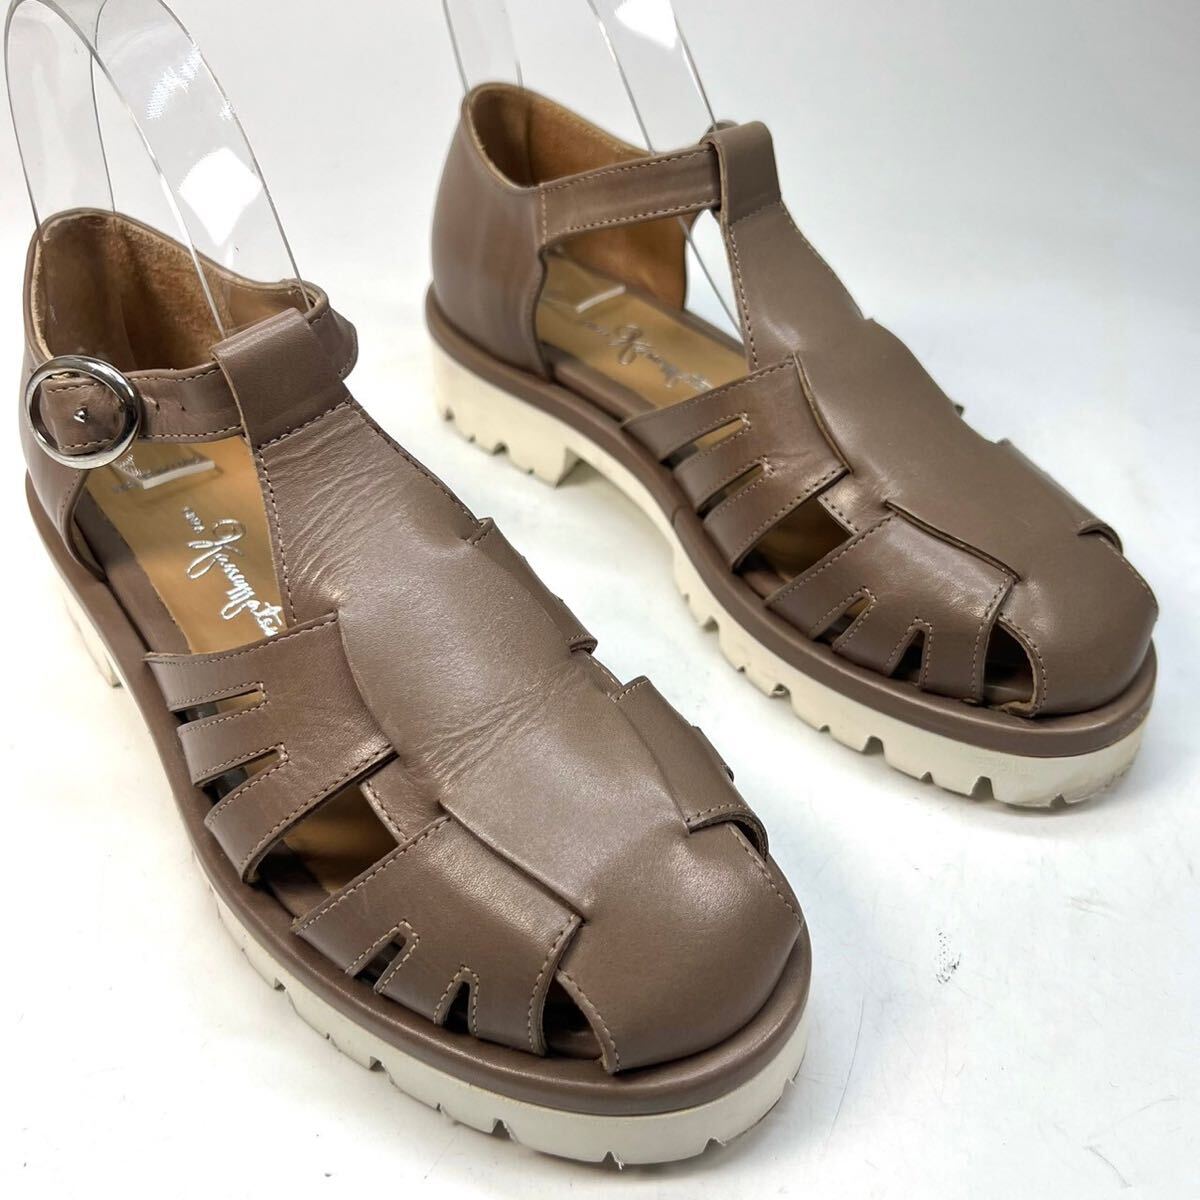 GINZA kanematsu Ginza Kanematsu g LUKA sandals thickness bottom leather 35 1/2 22.5cm lady's shoes shoes gray ju